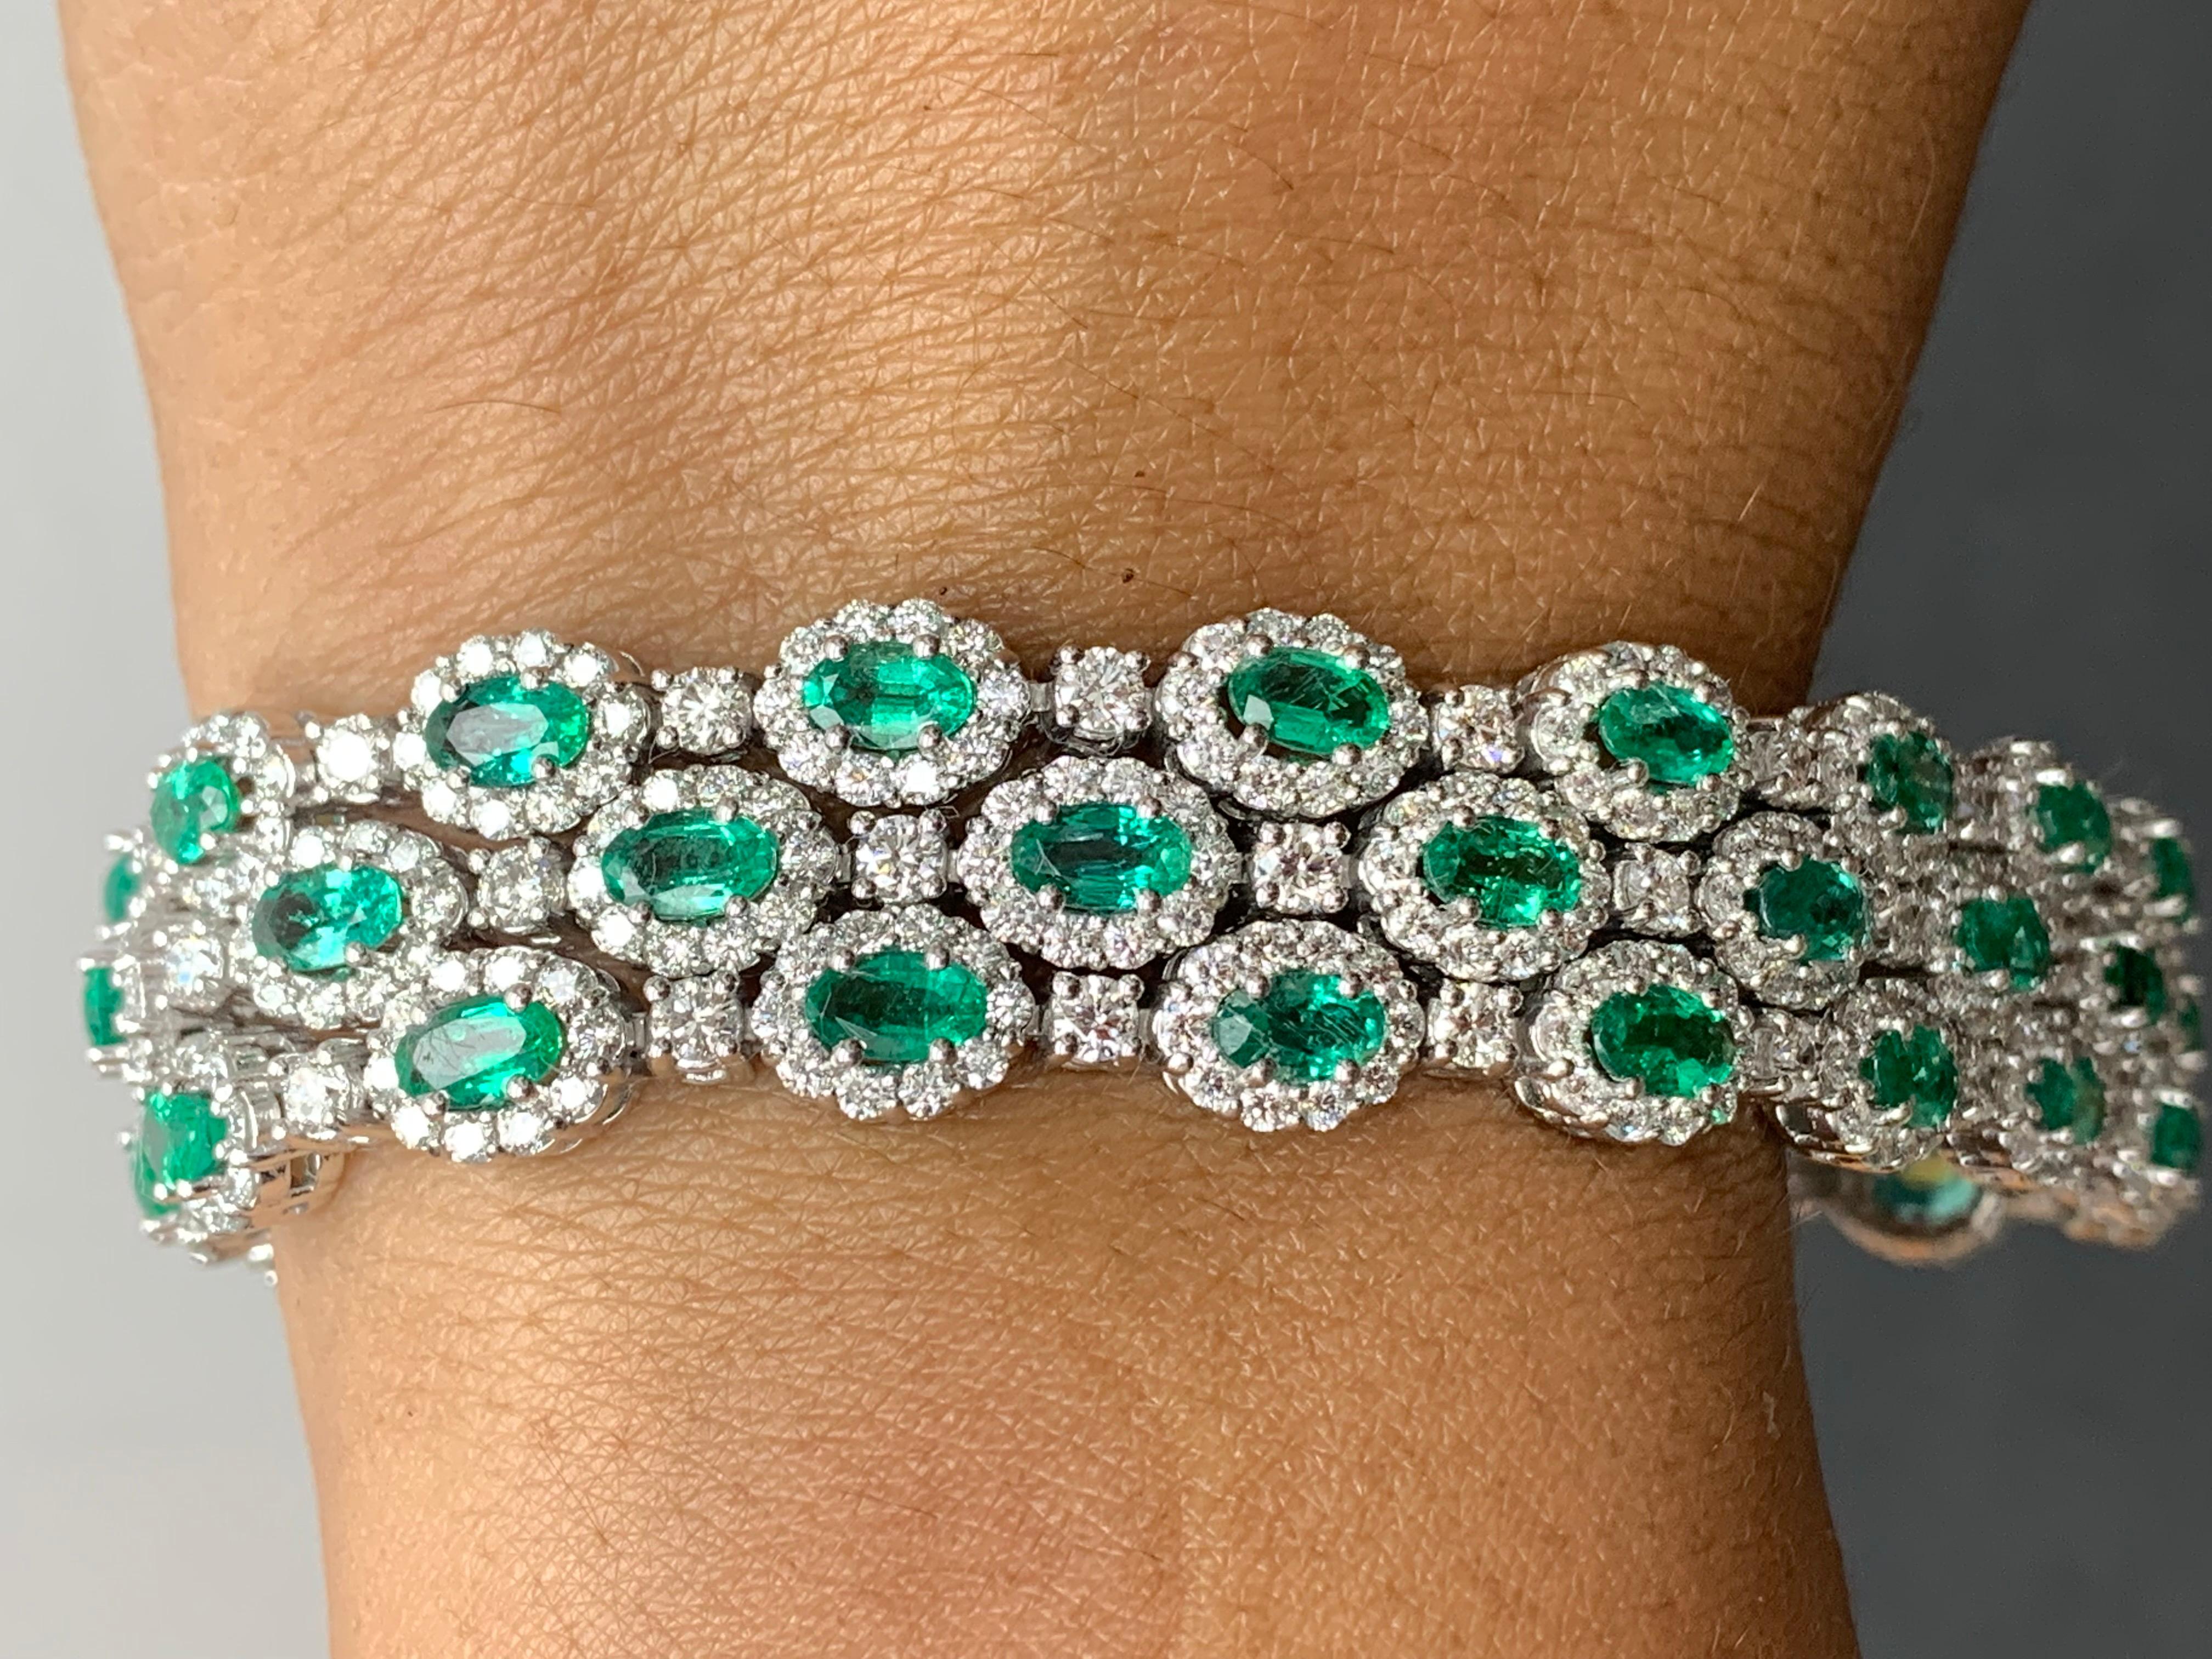 Ein wunderschönes, üppig grünes Armband aus Smaragden und Diamanten in 3 Reihen mit farbenprächtigen Smaragden, umgeben von einer einzigen Reihe runder Brillanten. 51 Smaragde im Ovalschliff wiegen insgesamt 10,95 Karat; 561 Diamanten mit Akzent